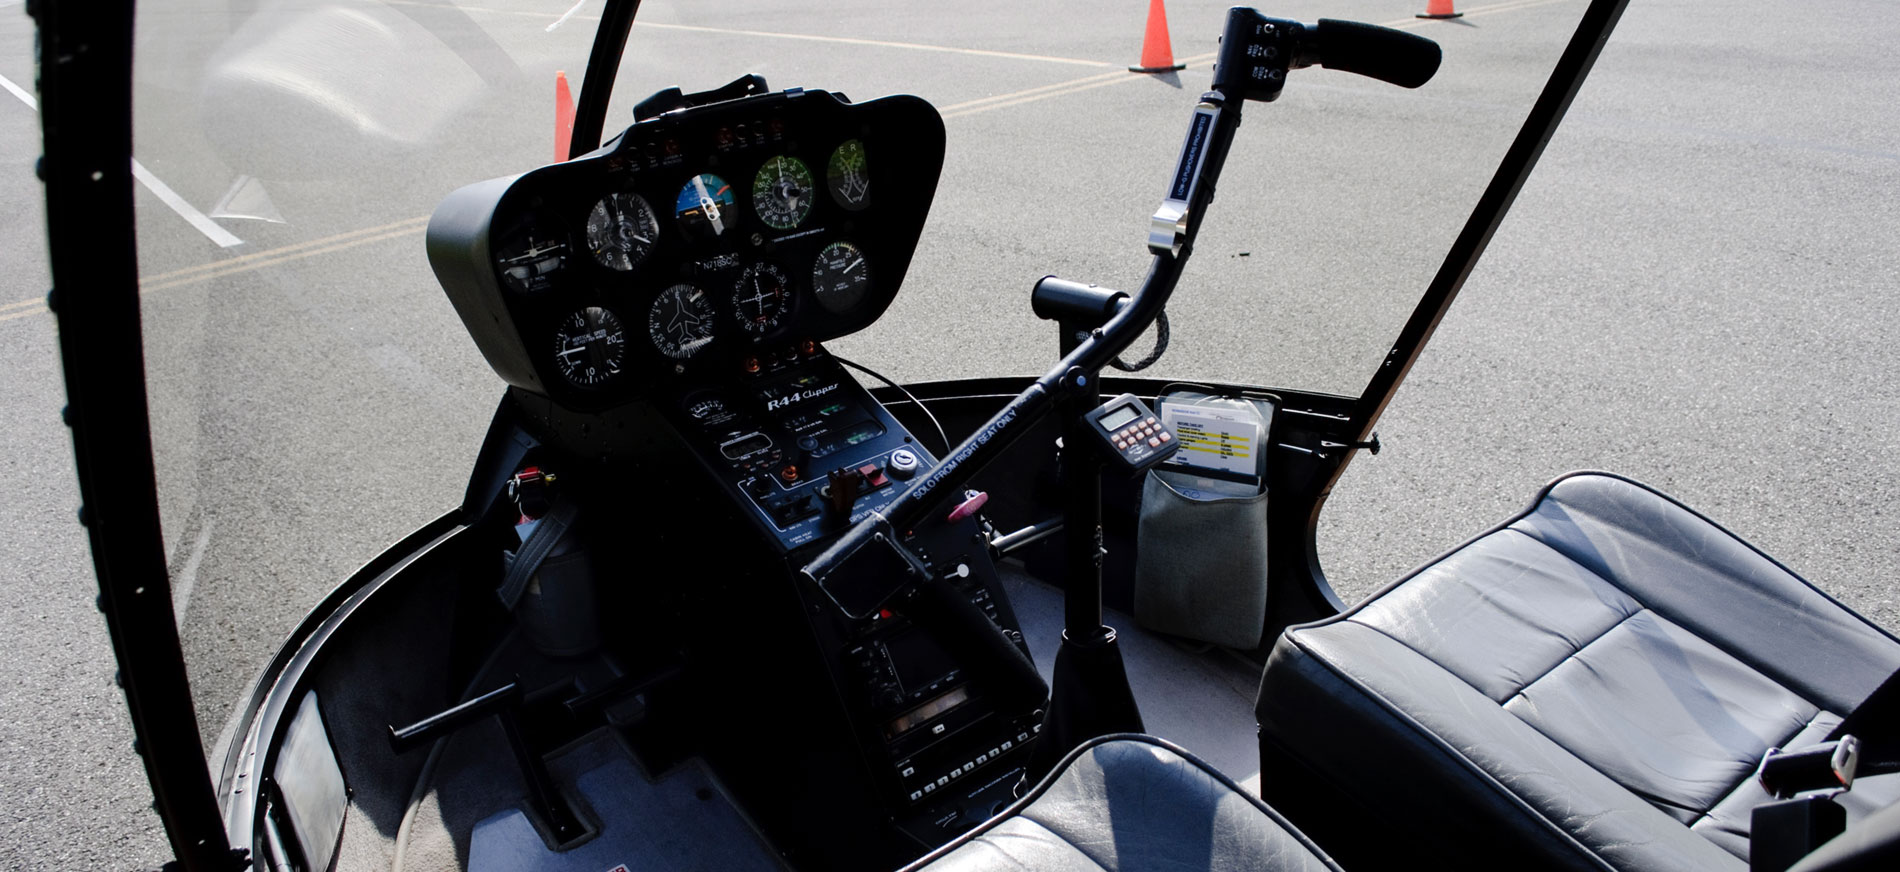 Danbury Airport's premier helicopter flight school